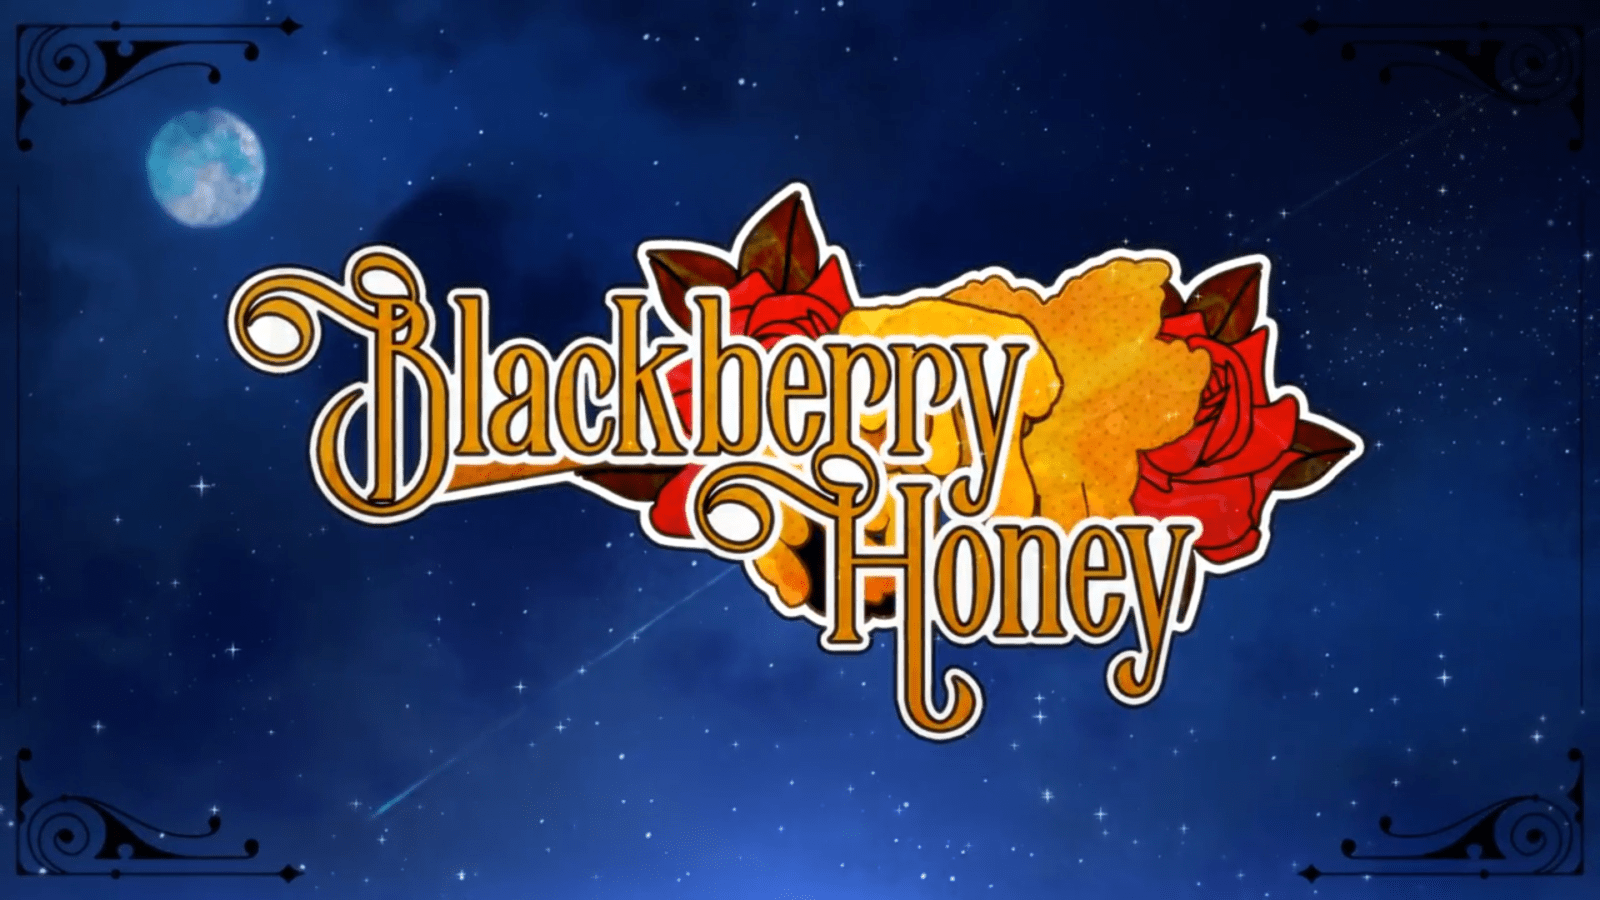 Blackberry-Honey-Main.png